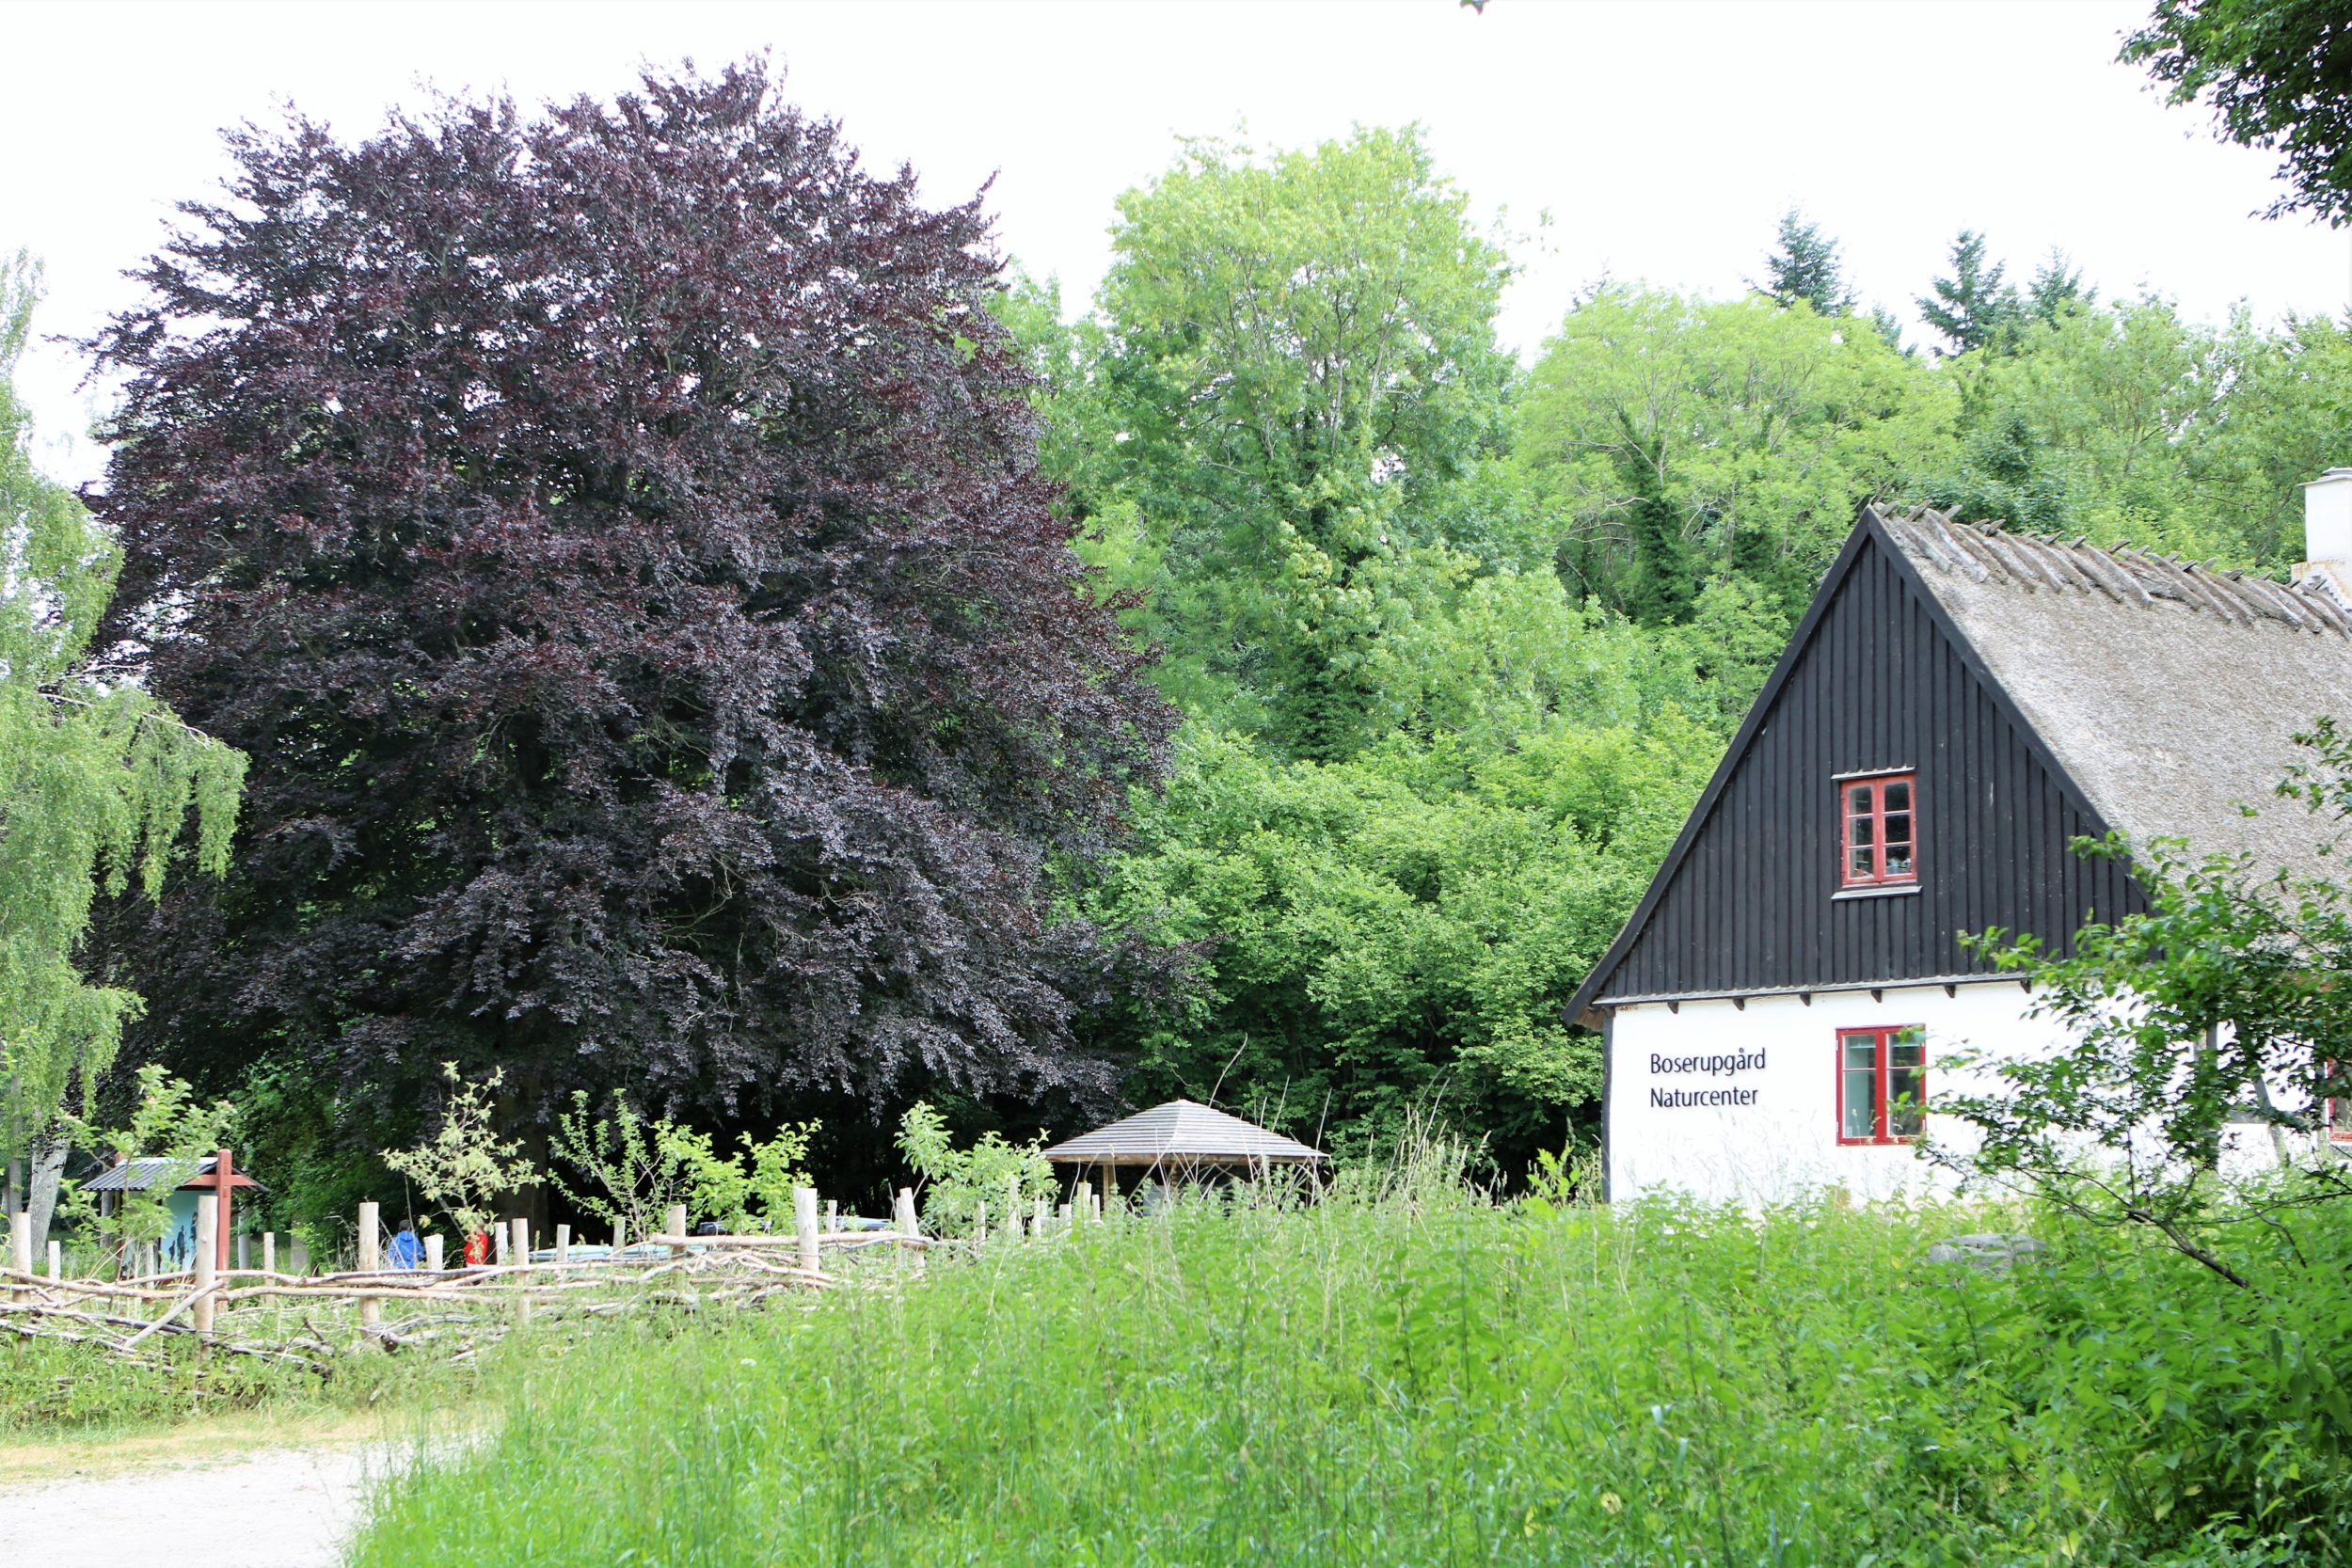 Boserupgård Naturcenter bliver en trædesten til oplevelser for børn og voksne i skoven